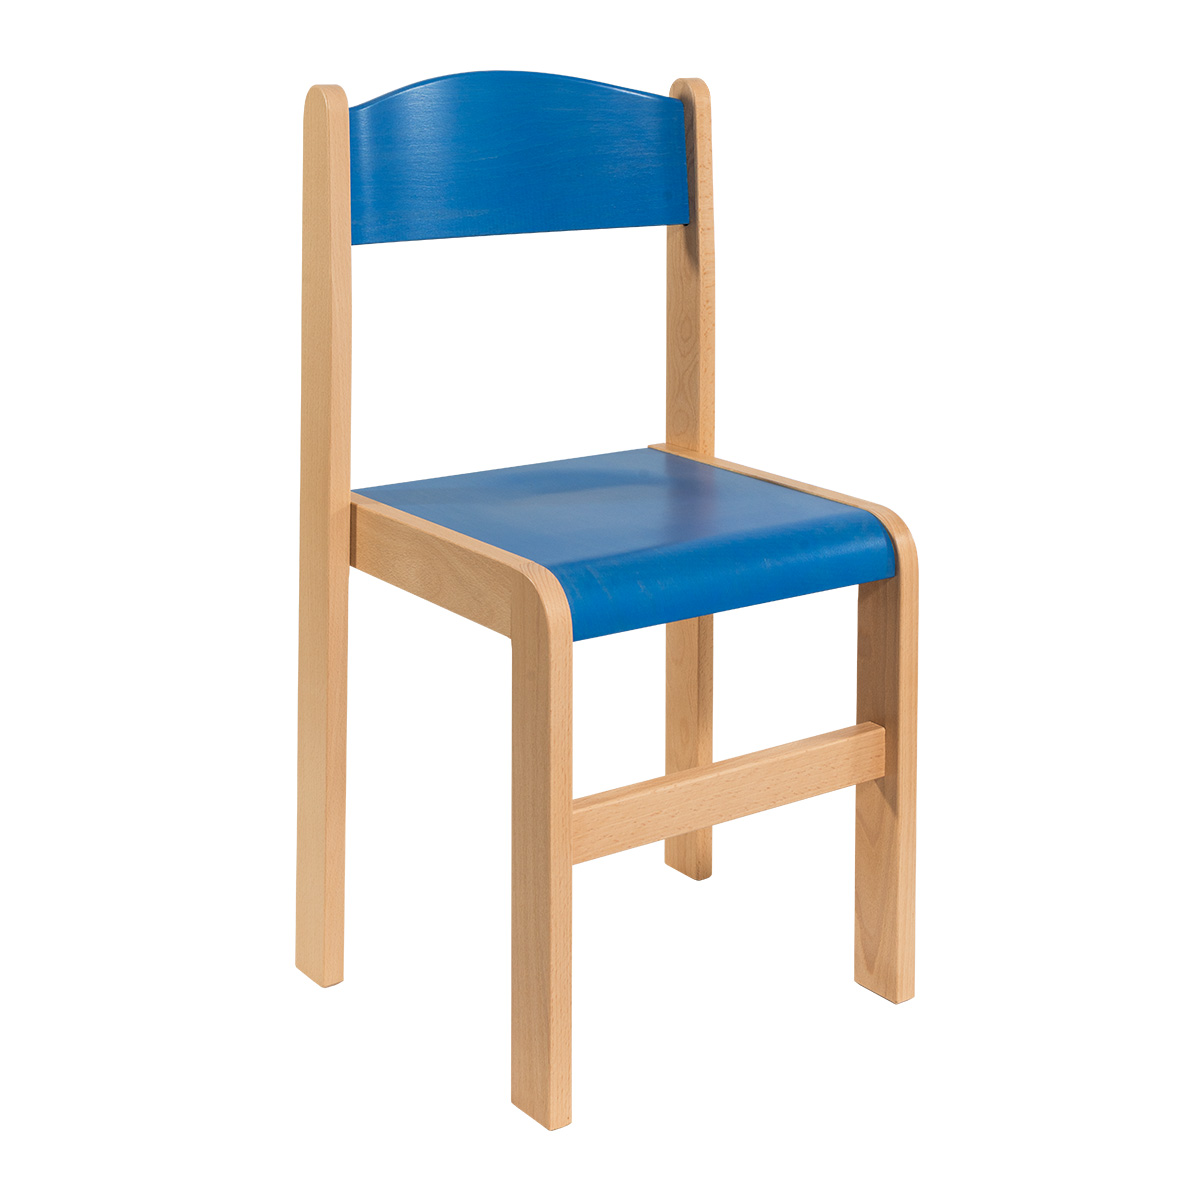 Detská stolička, Model 02, z bukového masívu, farebná